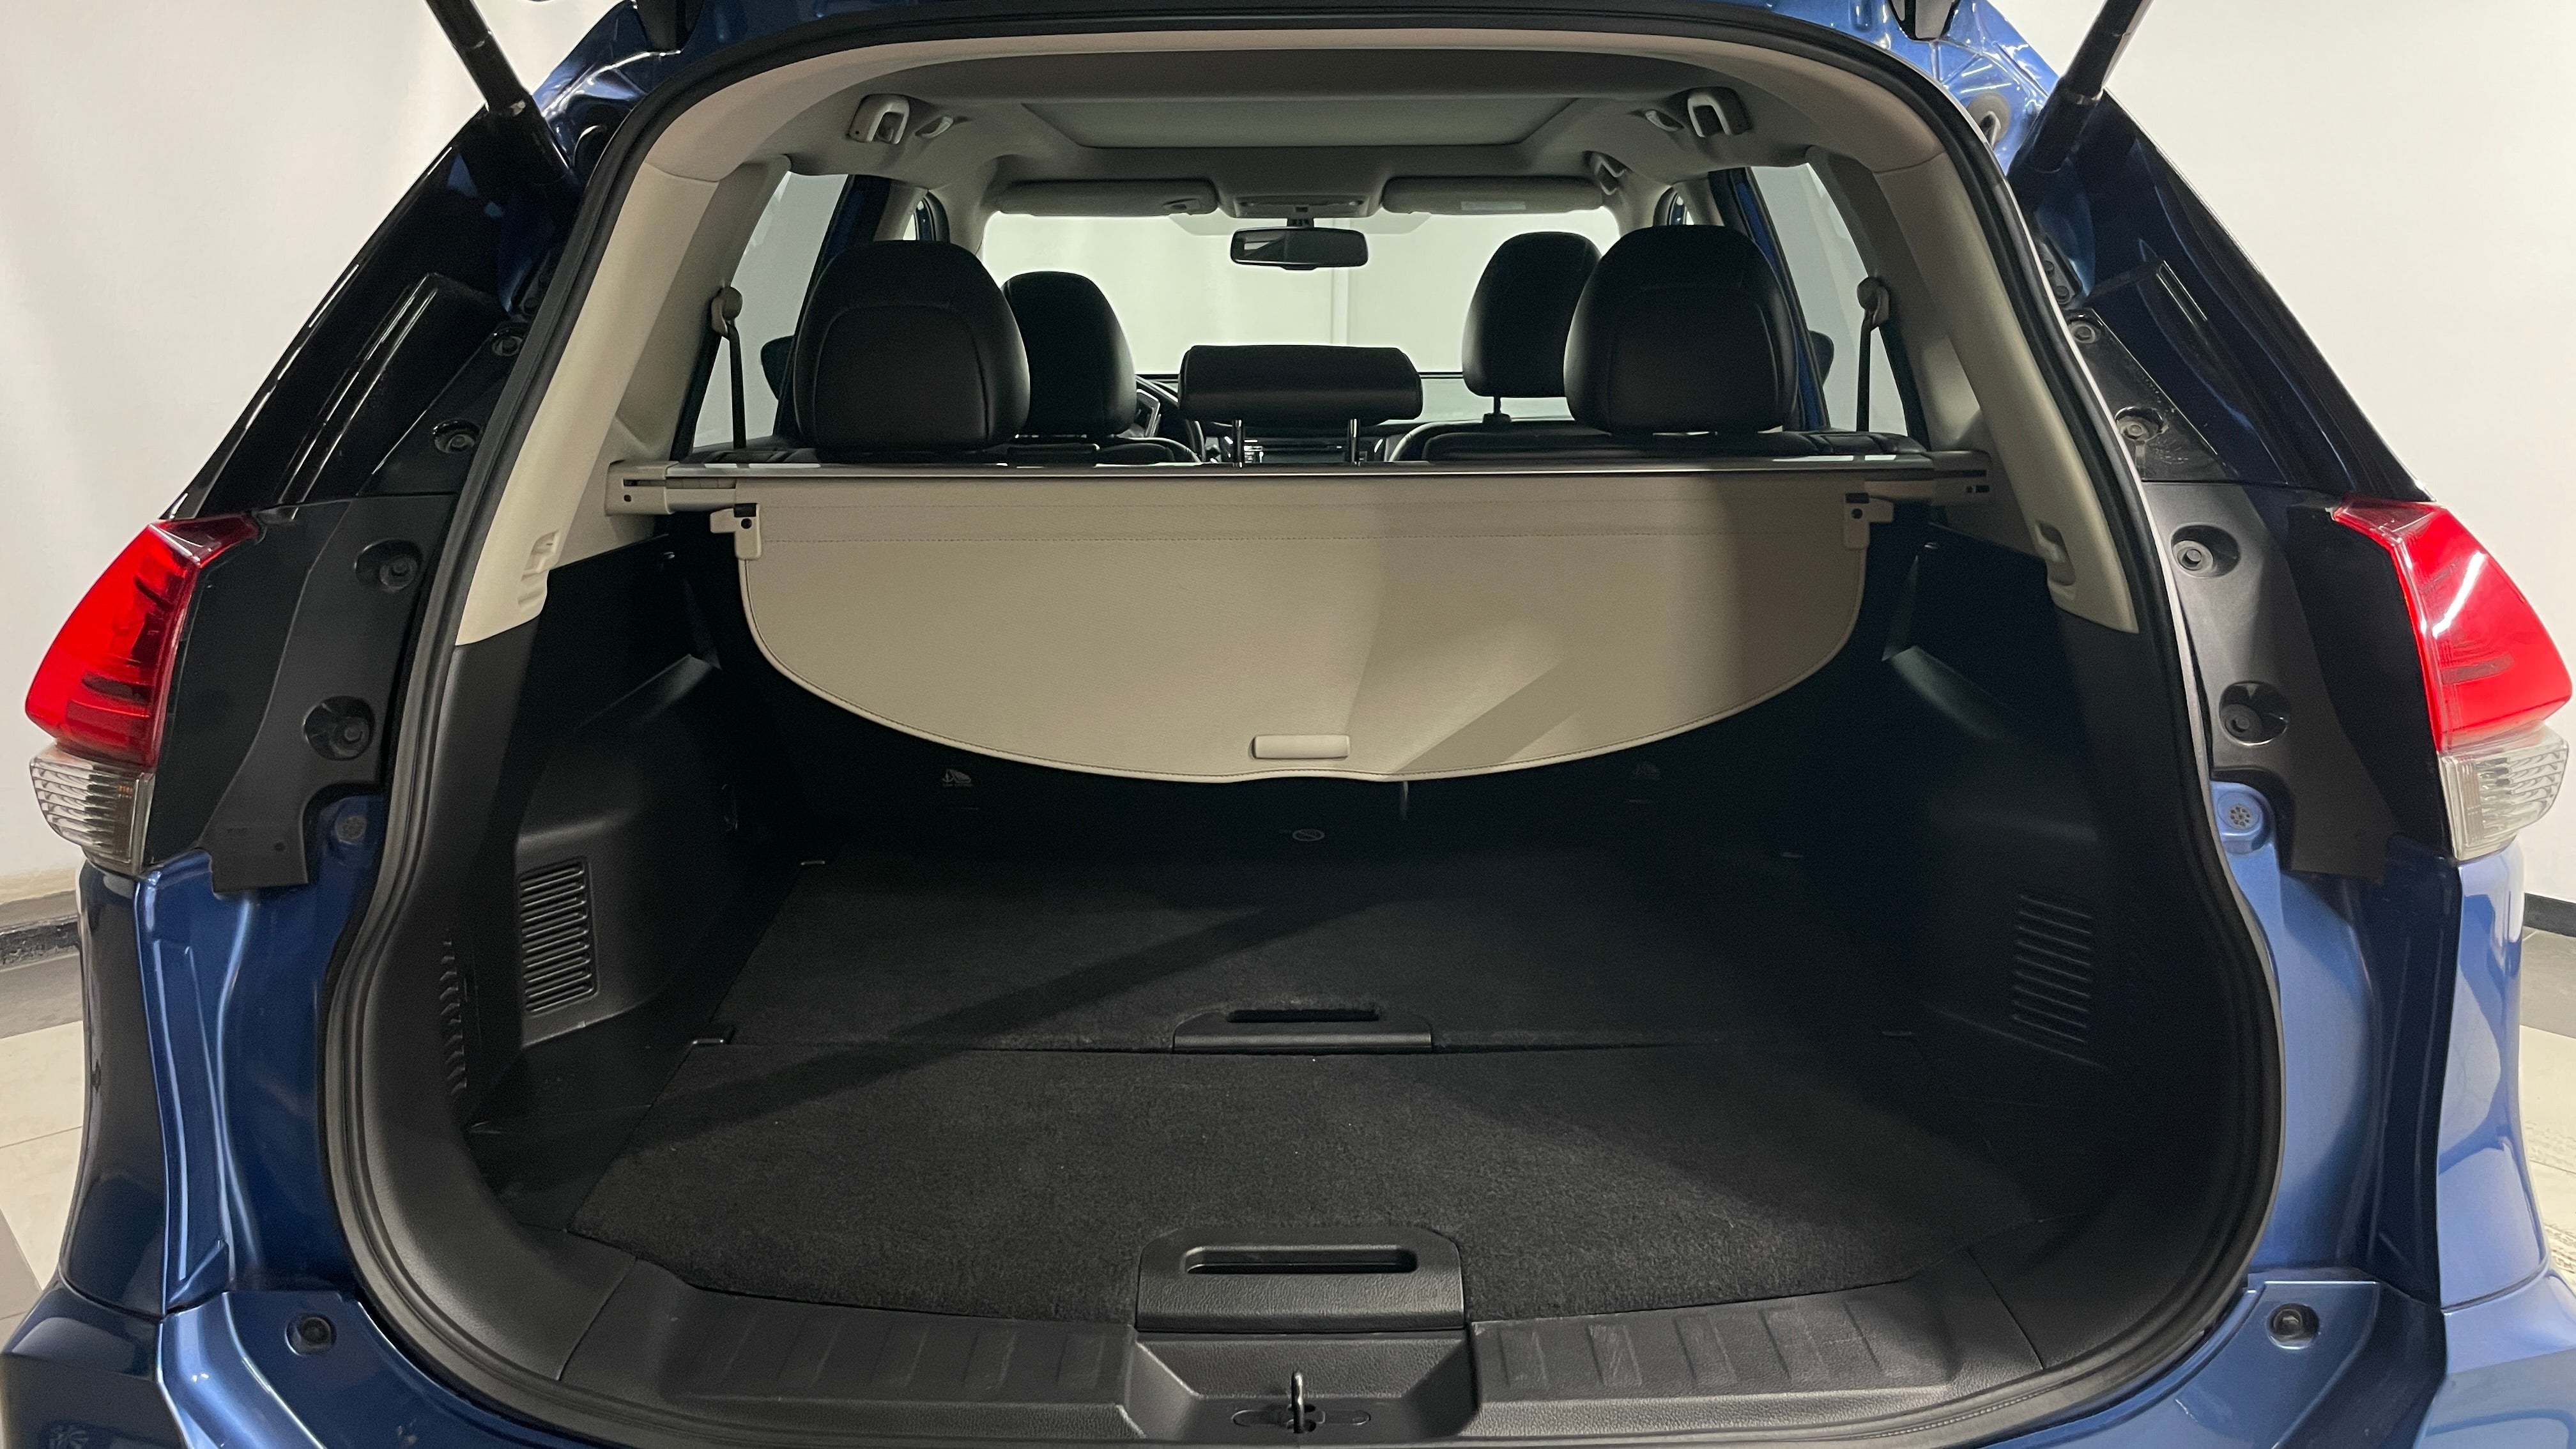 2019 Nissan X-Trail EXCLUSIVE L4 2.5L 170 CP 5 PUERTAS AUT BA AA